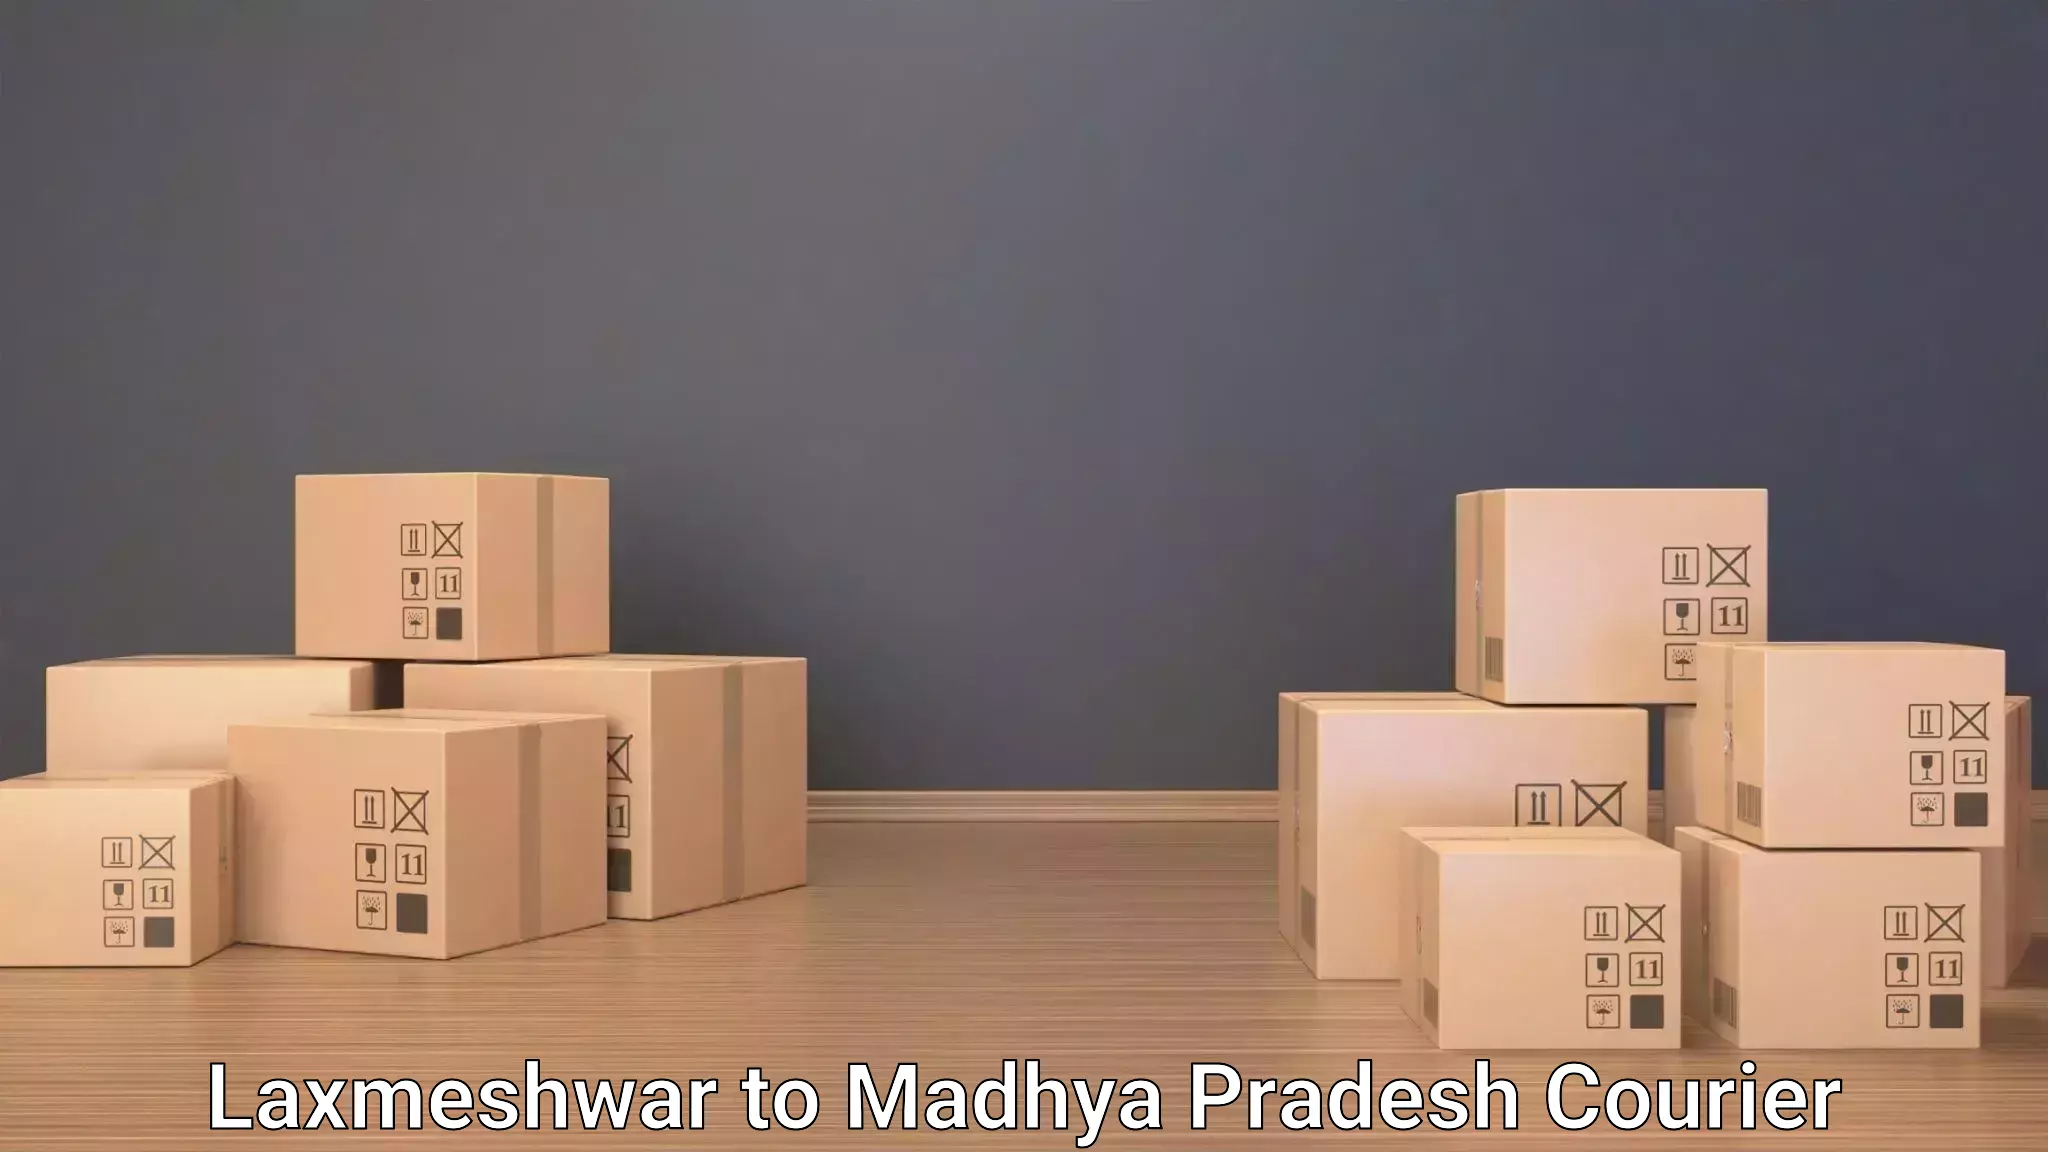 Baggage shipping service Laxmeshwar to Ashoknagar